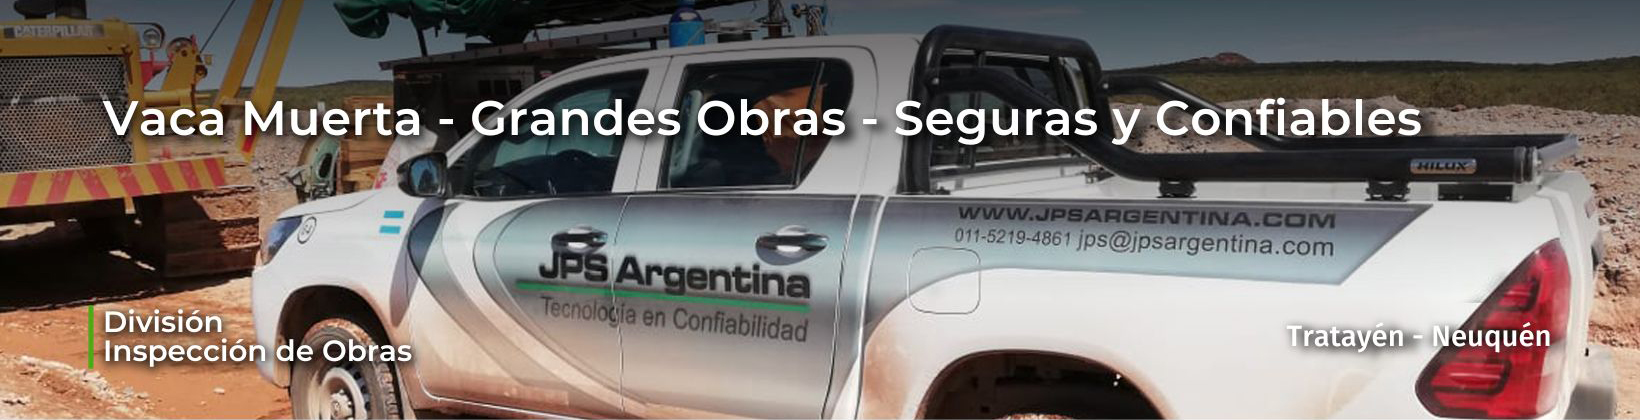 JPS Argentina en Tratayén – Vaca Muerta Inspeccionamos las Grandes Obras del país para que sean Seguras y Confiables